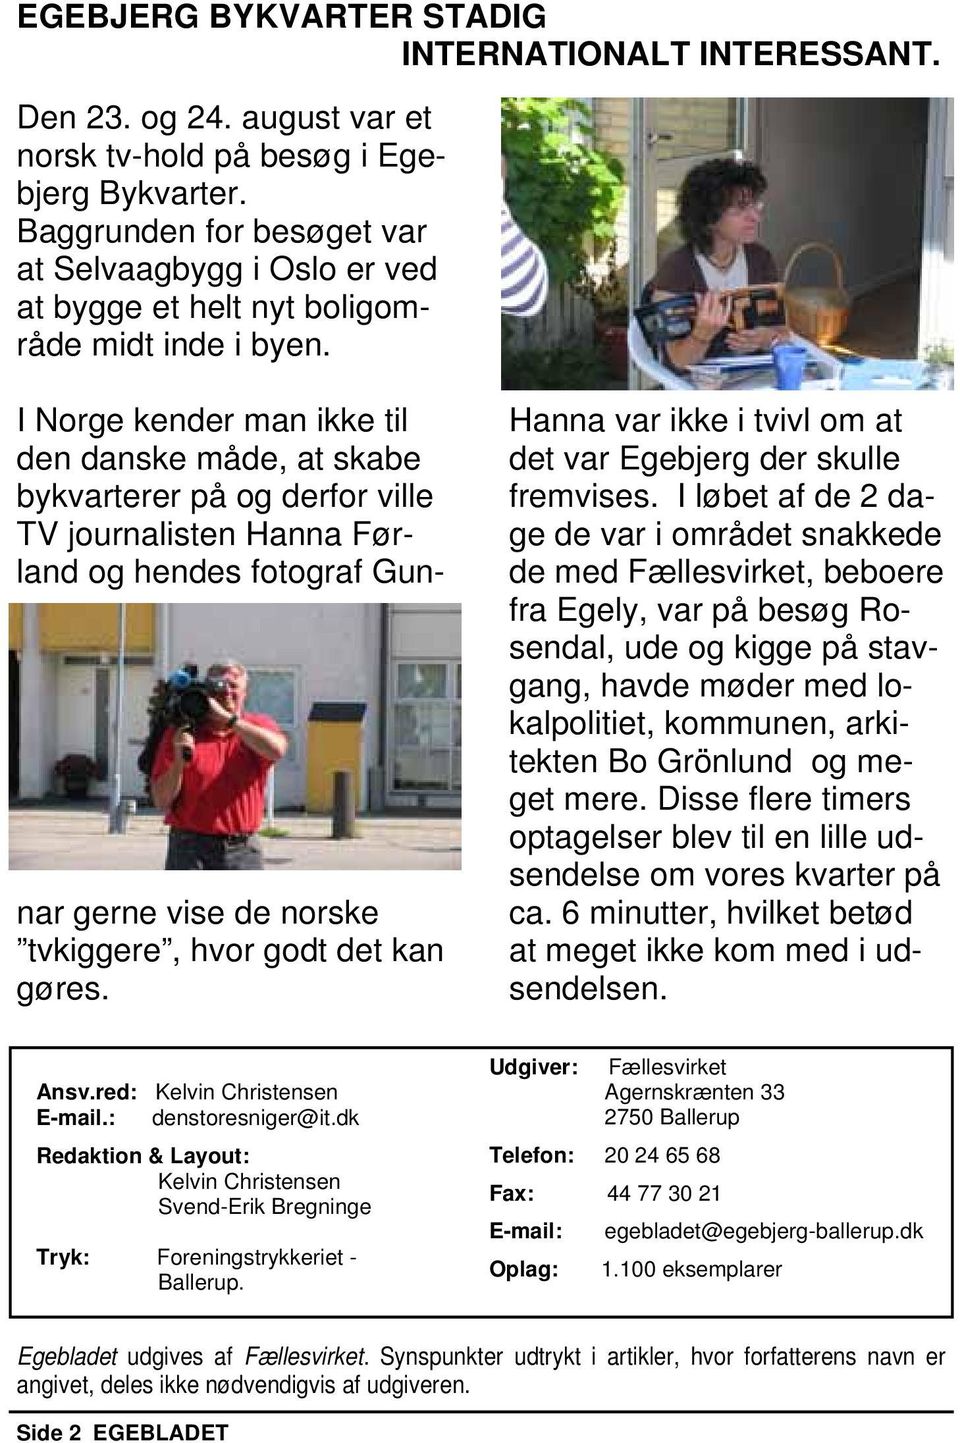 I Norge kender man ikke til den danske måde, at skabe bykvarterer på og derfor ville TV journalisten Hanna Førland og hendes fotograf Gunnar gerne vise de norske tvkiggere, hvor godt det kan gøres.